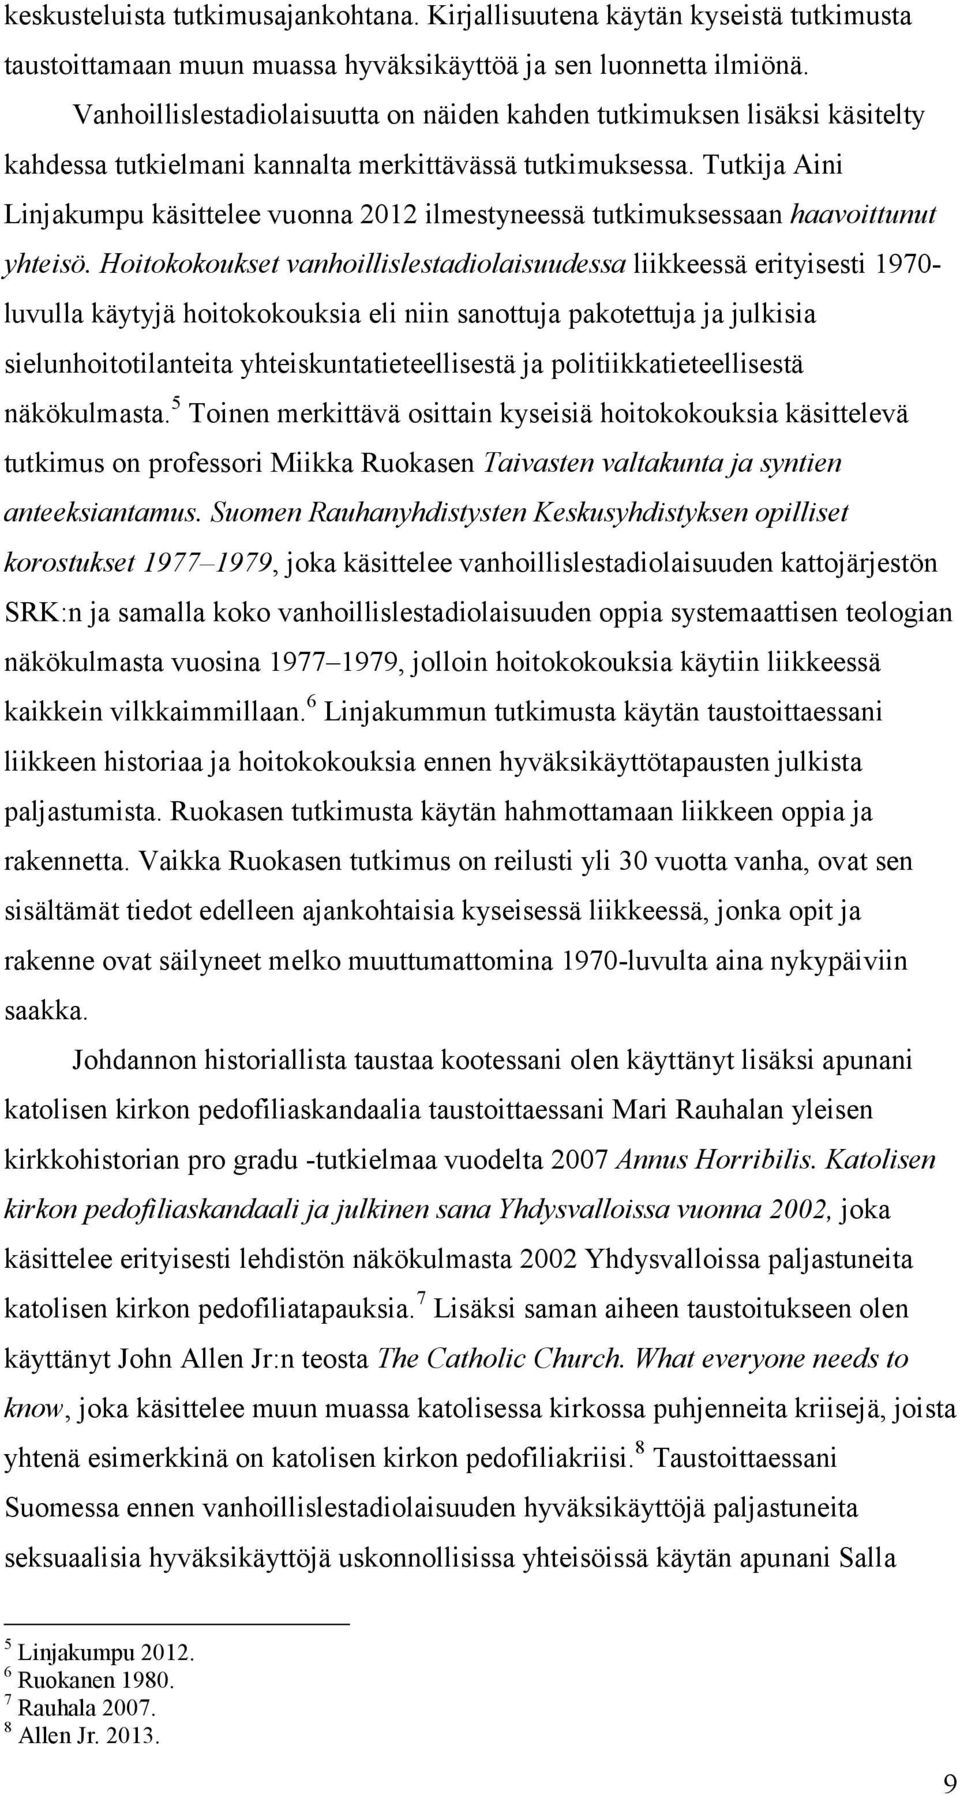 Tutkija Aini Linjakumpu käsittelee vuonna 2012 ilmestyneessä tutkimuksessaan haavoittunut yhteisö.